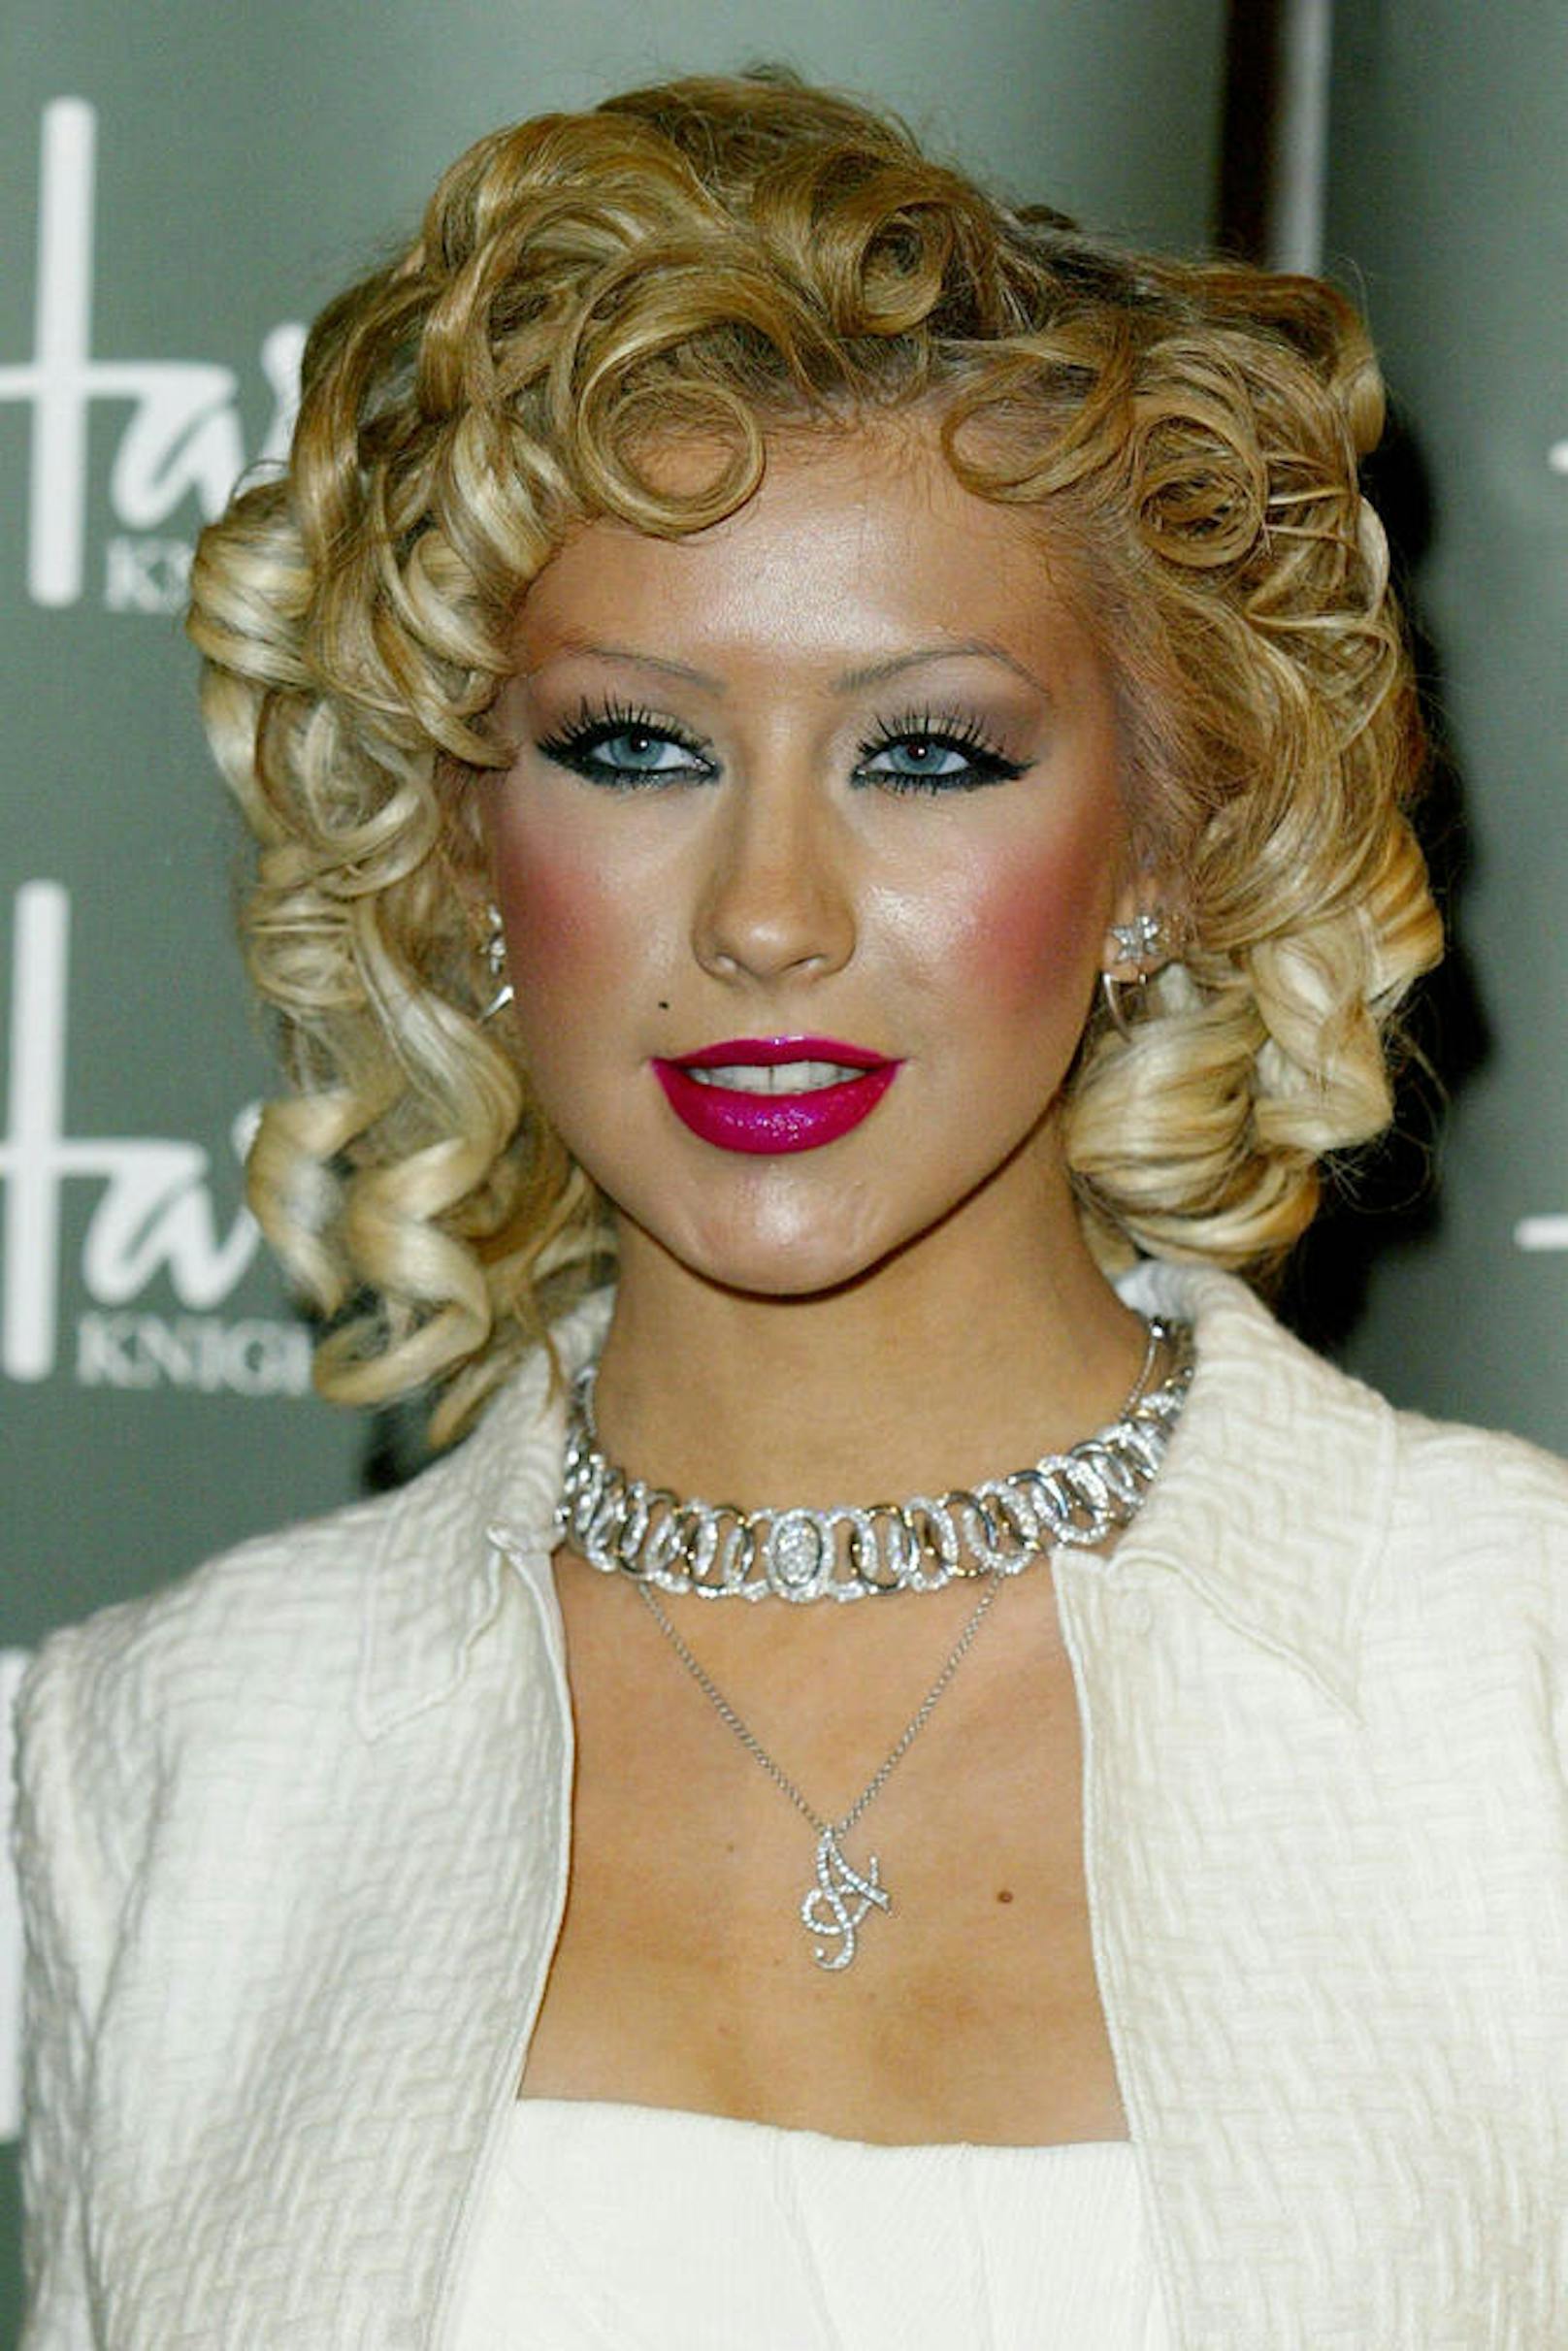 Christina Aguilera mit allem zu viel: Lippen, Make-up, Augen etc.